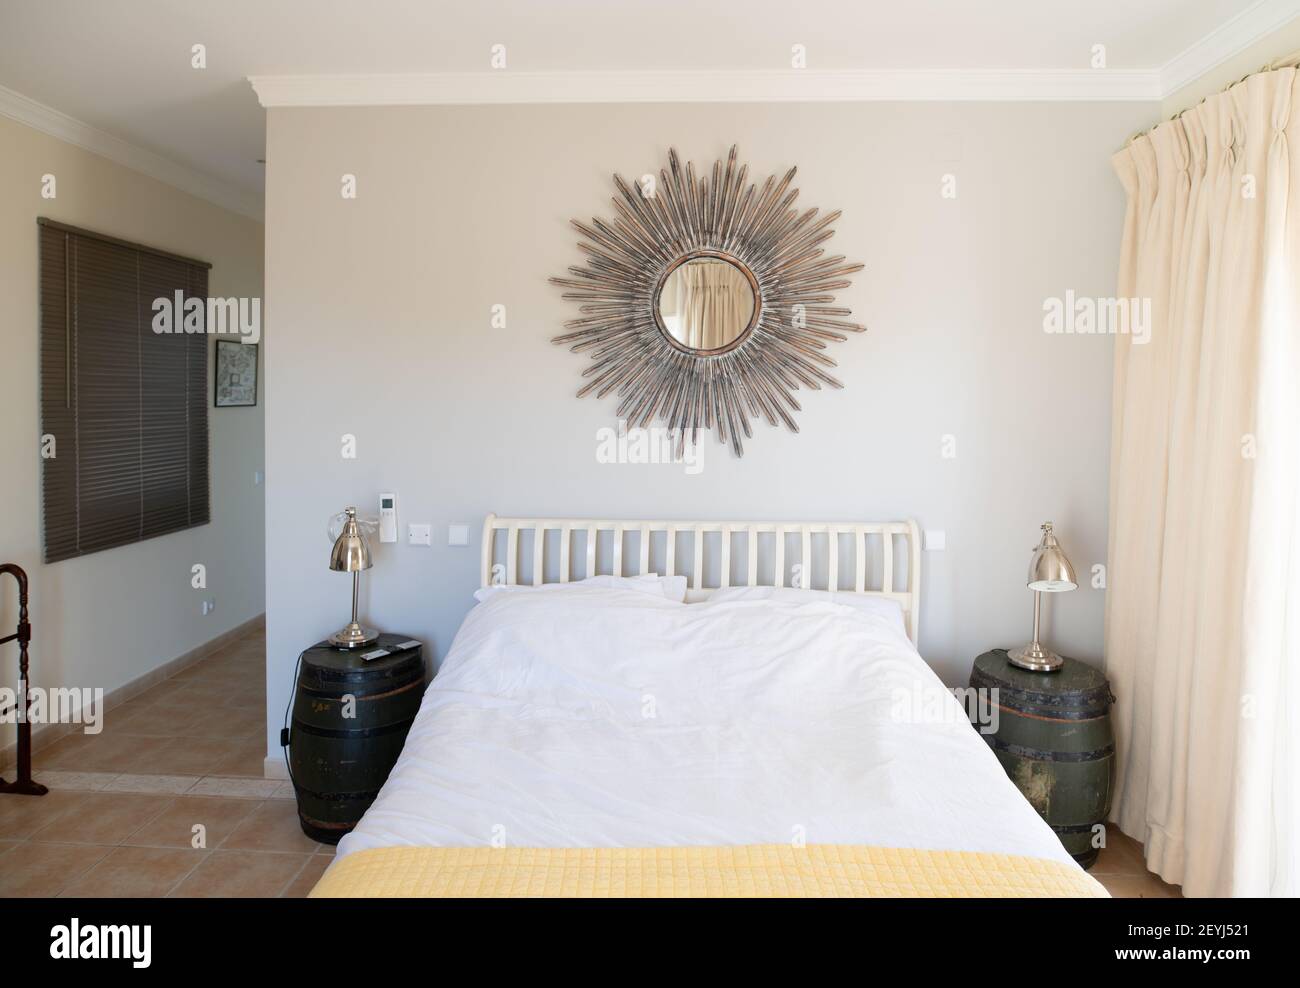 Einfaches Schlafzimmer mit verziertem Sonnenspiegel über einem weißen Doppelbett Bett Stockfoto